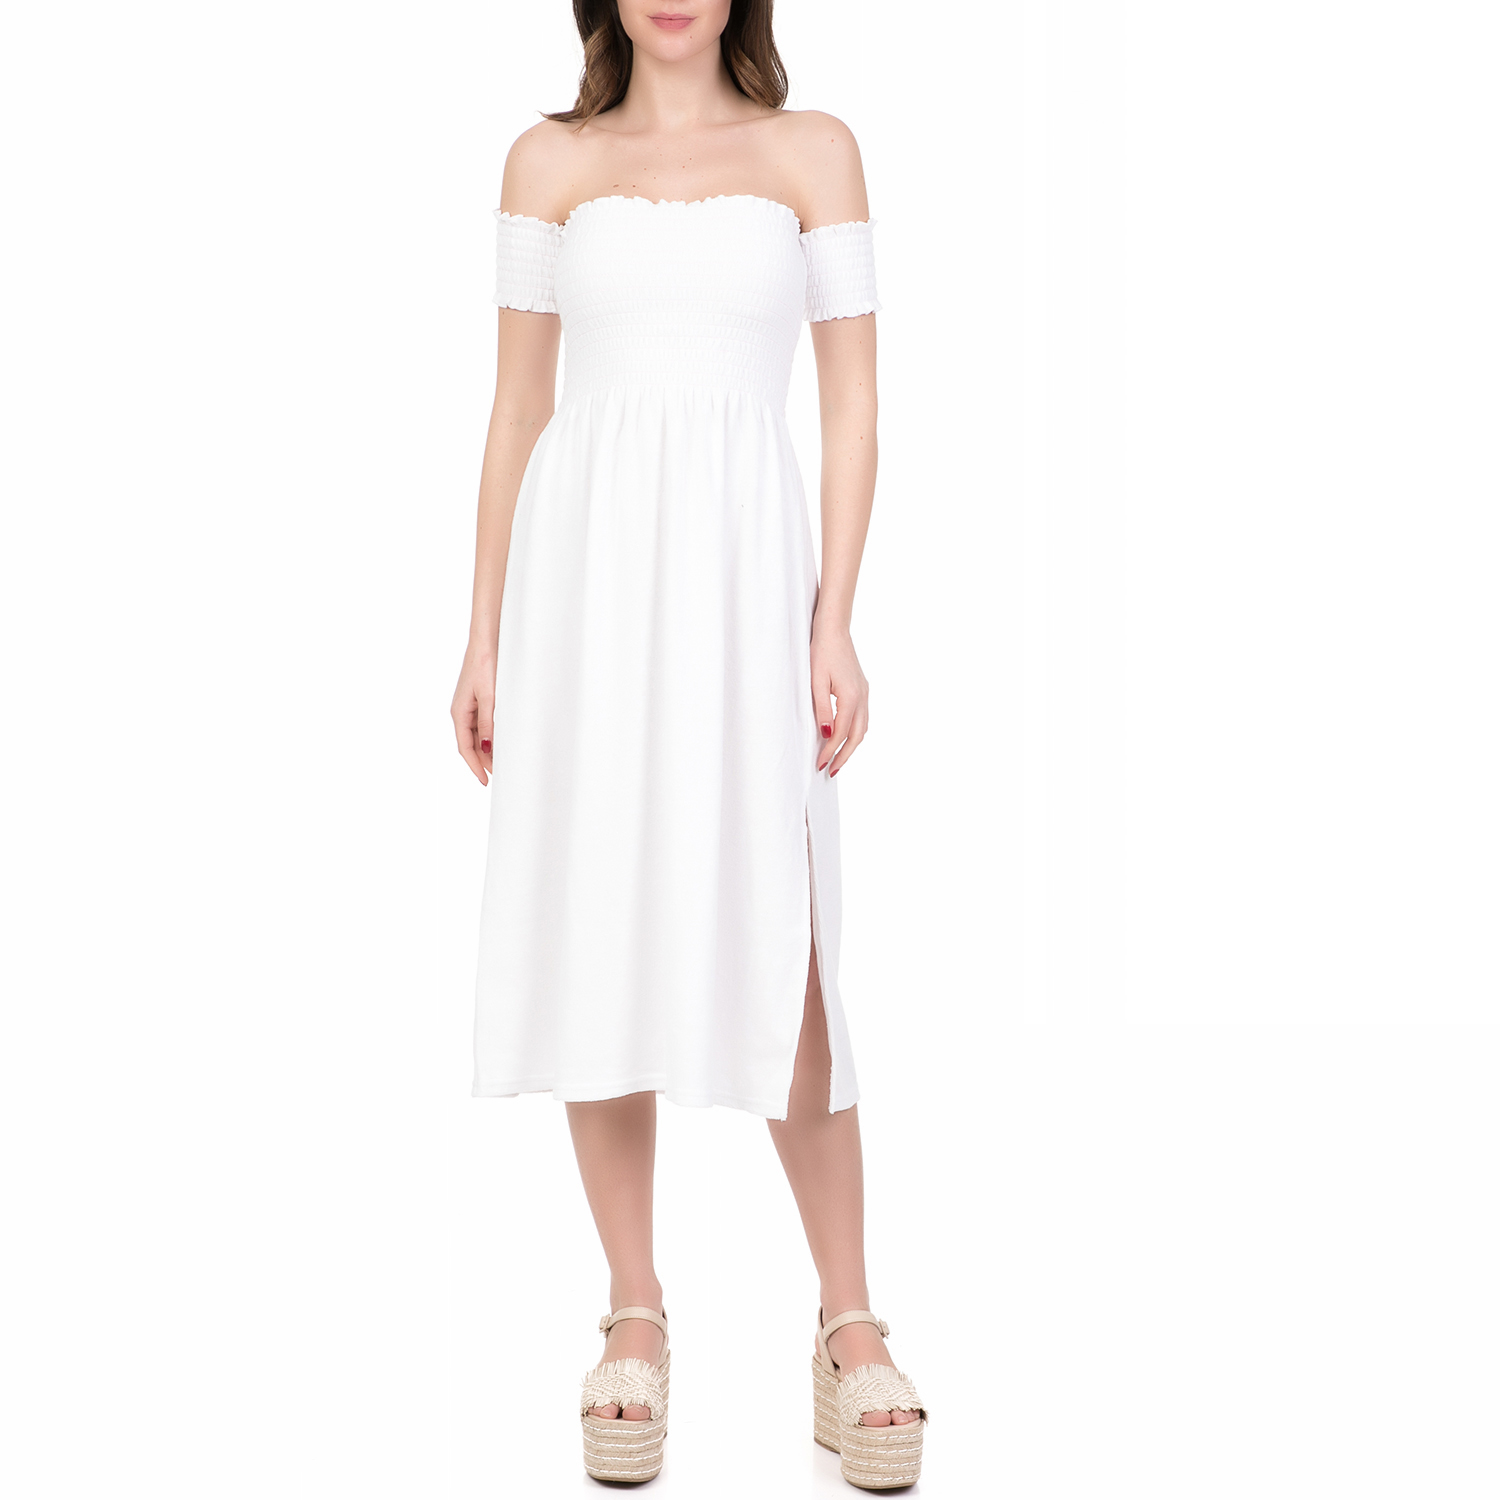 Γυναικεία/Ρούχα/Φορέματα/Μέχρι το γόνατο JUICY COUTURE - Γυναικείο midi φόρεμα MICROTERRY SMOCKED JUICY COUTURE λευκό